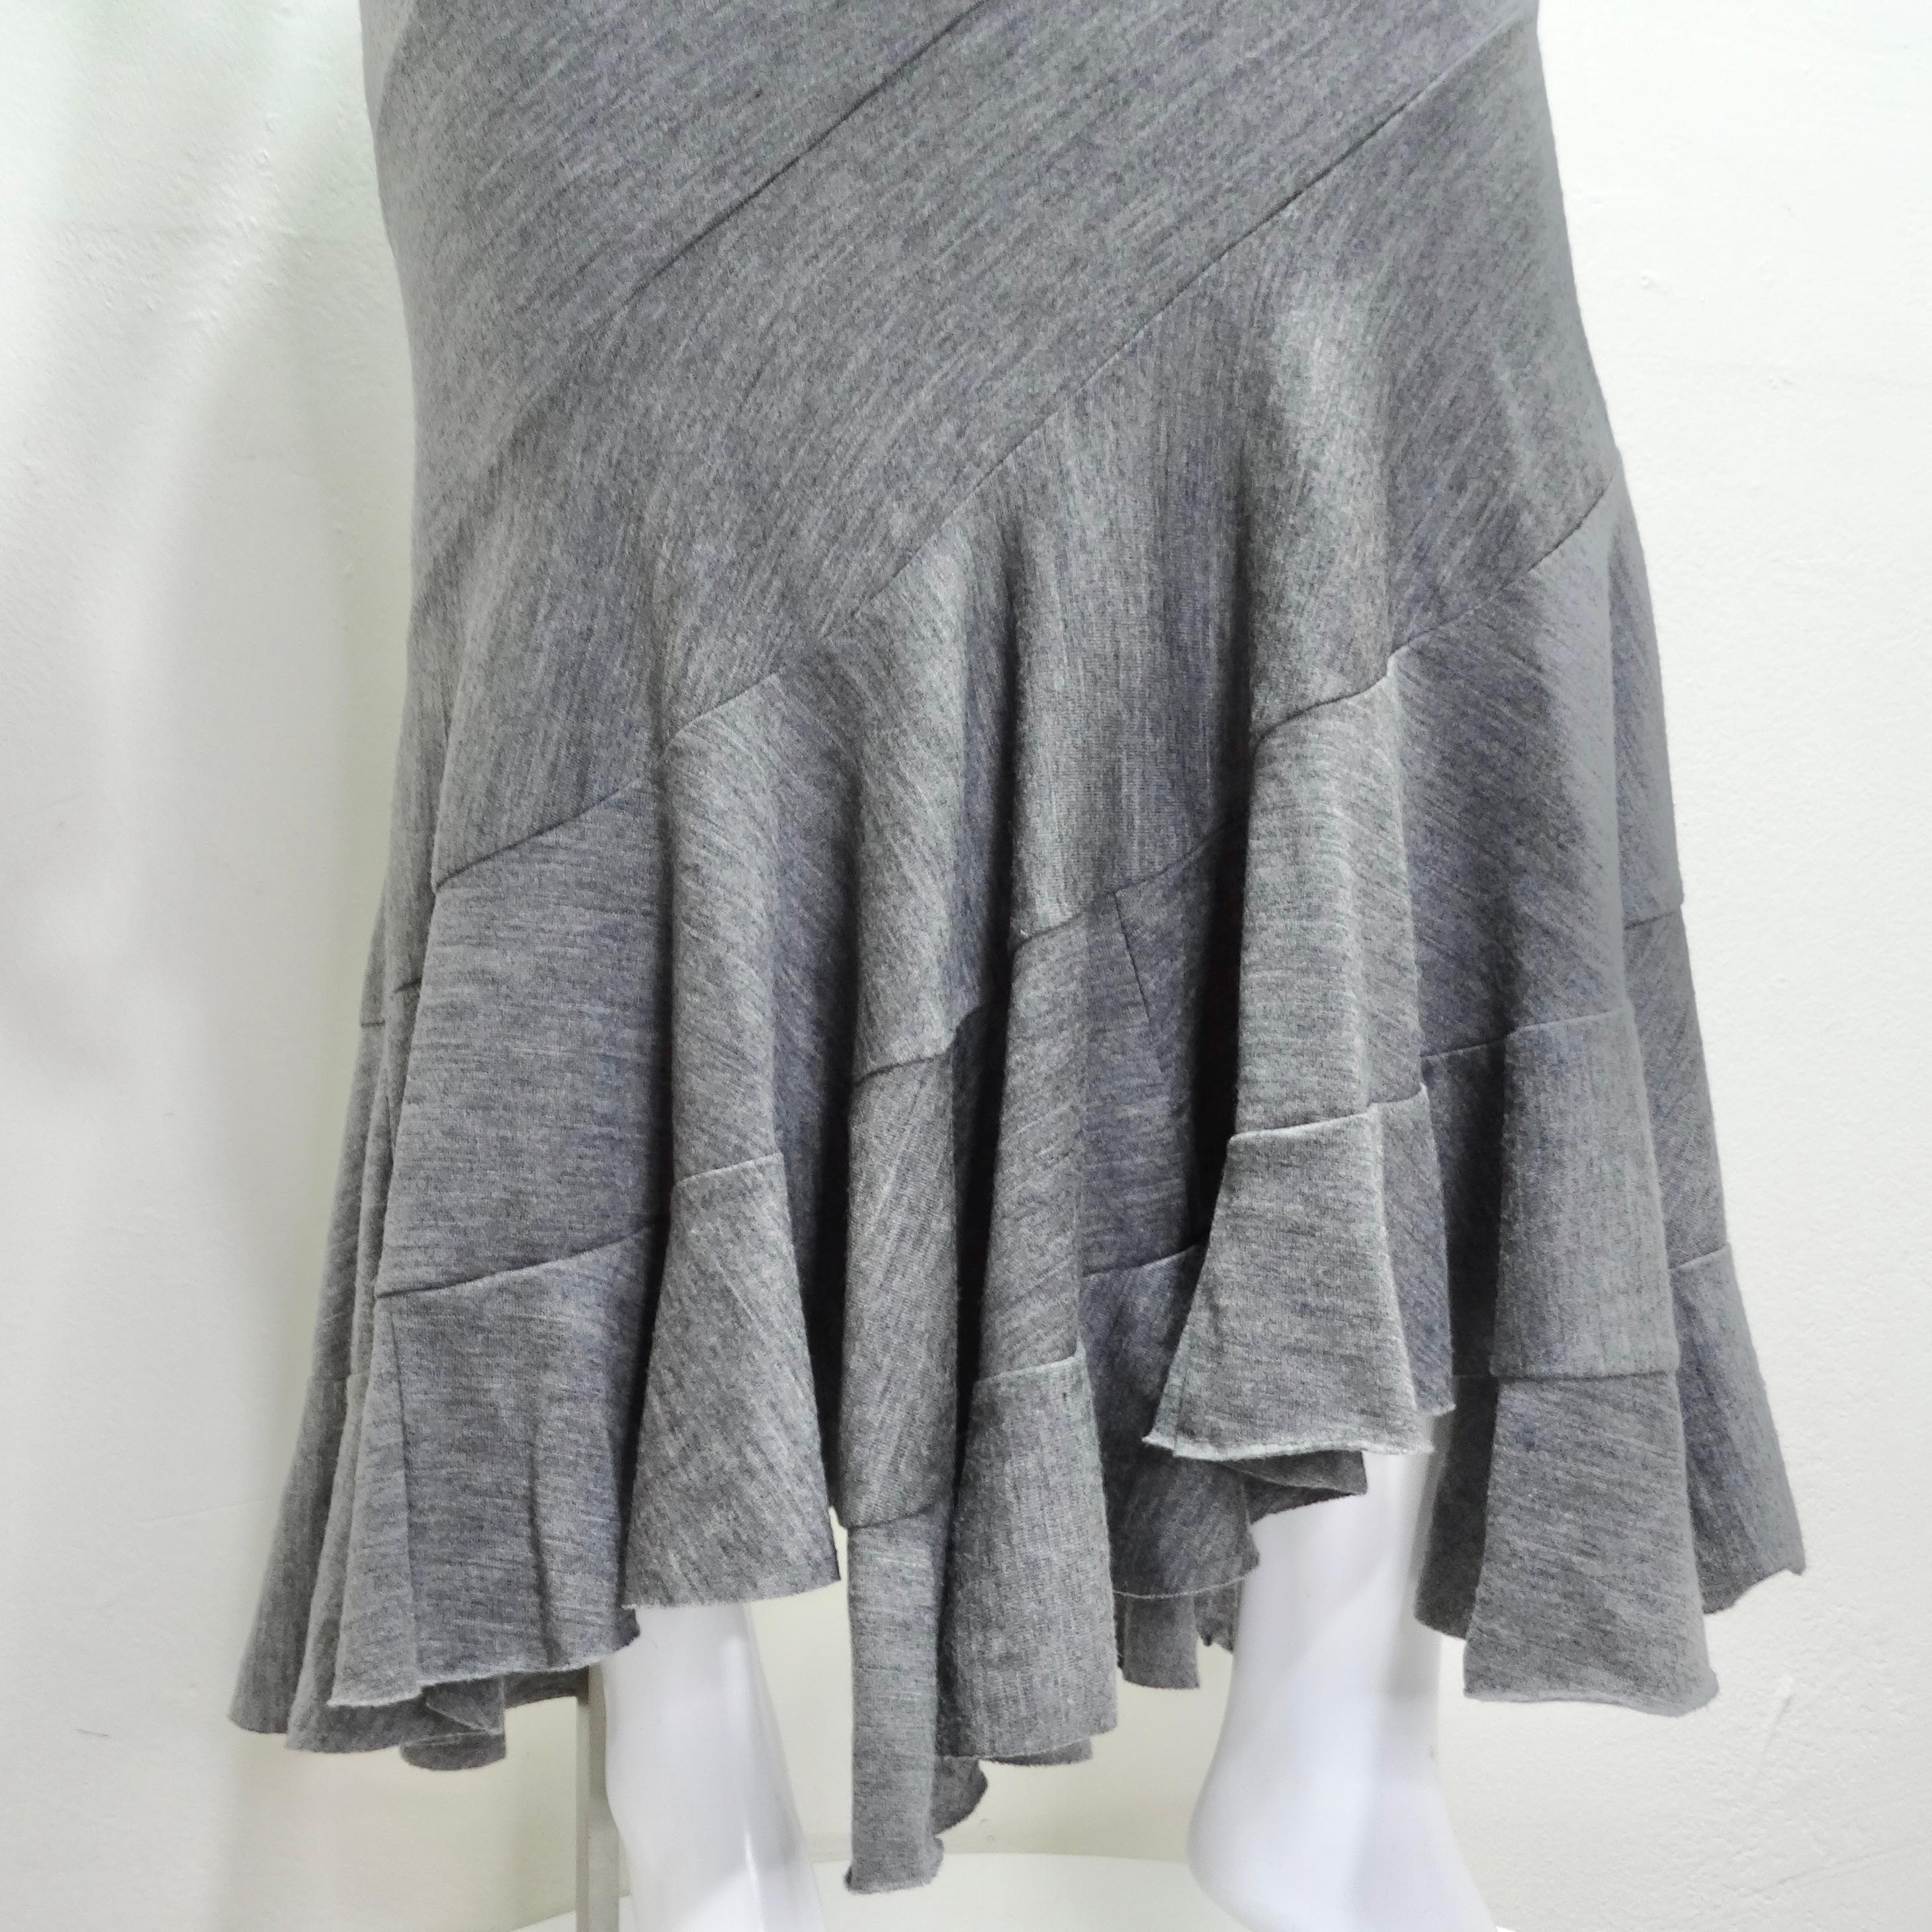 Voici la jupe/robe tube en laine grise Junya Watanabe Comme Des Garcons - une création magistrale qui allie harmonieusement un design avant-gardiste à la polyvalence et au confort. Cette robe/jupe tube en laine grise extensible est un véritable